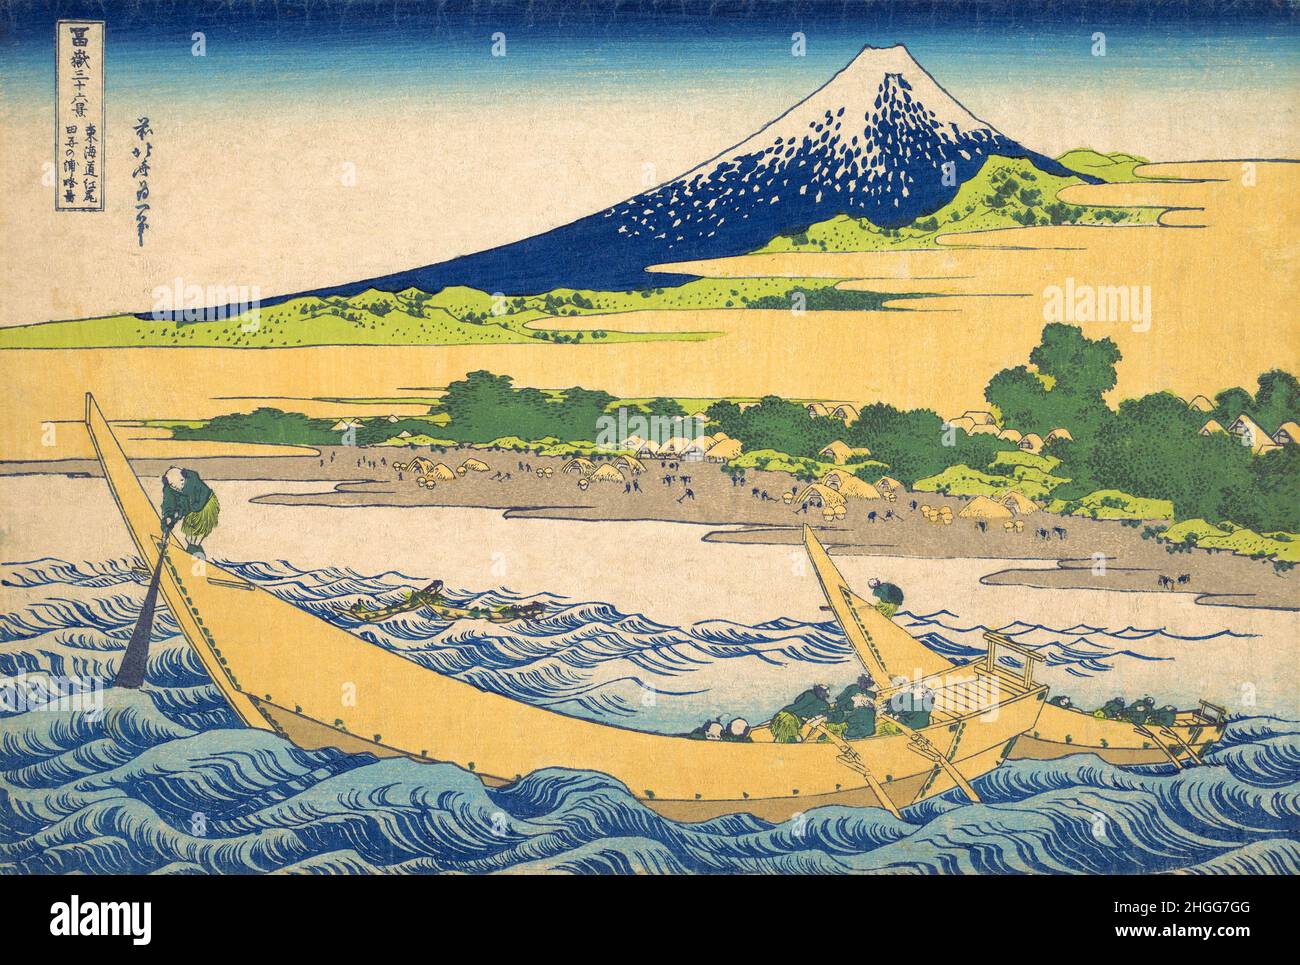 Giappone: 'Tago Bay vicino a Ejiri sul Tokaido'. Ukiyo-e stampa in blocco della serie «trentasei viste del Monte Fuji» di Katsushika Hokusai (31 ottobre 1760 - 10 maggio 1849), 1830. “trentasei viste del Monte Fuji” è una serie di stampe in legno realizzate dall’artista giapponese Katsushika Hokusai. La serie raffigura il Monte Fuji in stagioni e condizioni meteorologiche diverse da una varietà di luoghi e distanze. Si compone di 46 stampe create tra il 1826 e il 1833. I primi 36 furono inclusi nella pubblicazione originale e, a causa della loro popolarità, ne furono aggiunti altri 10. Foto Stock